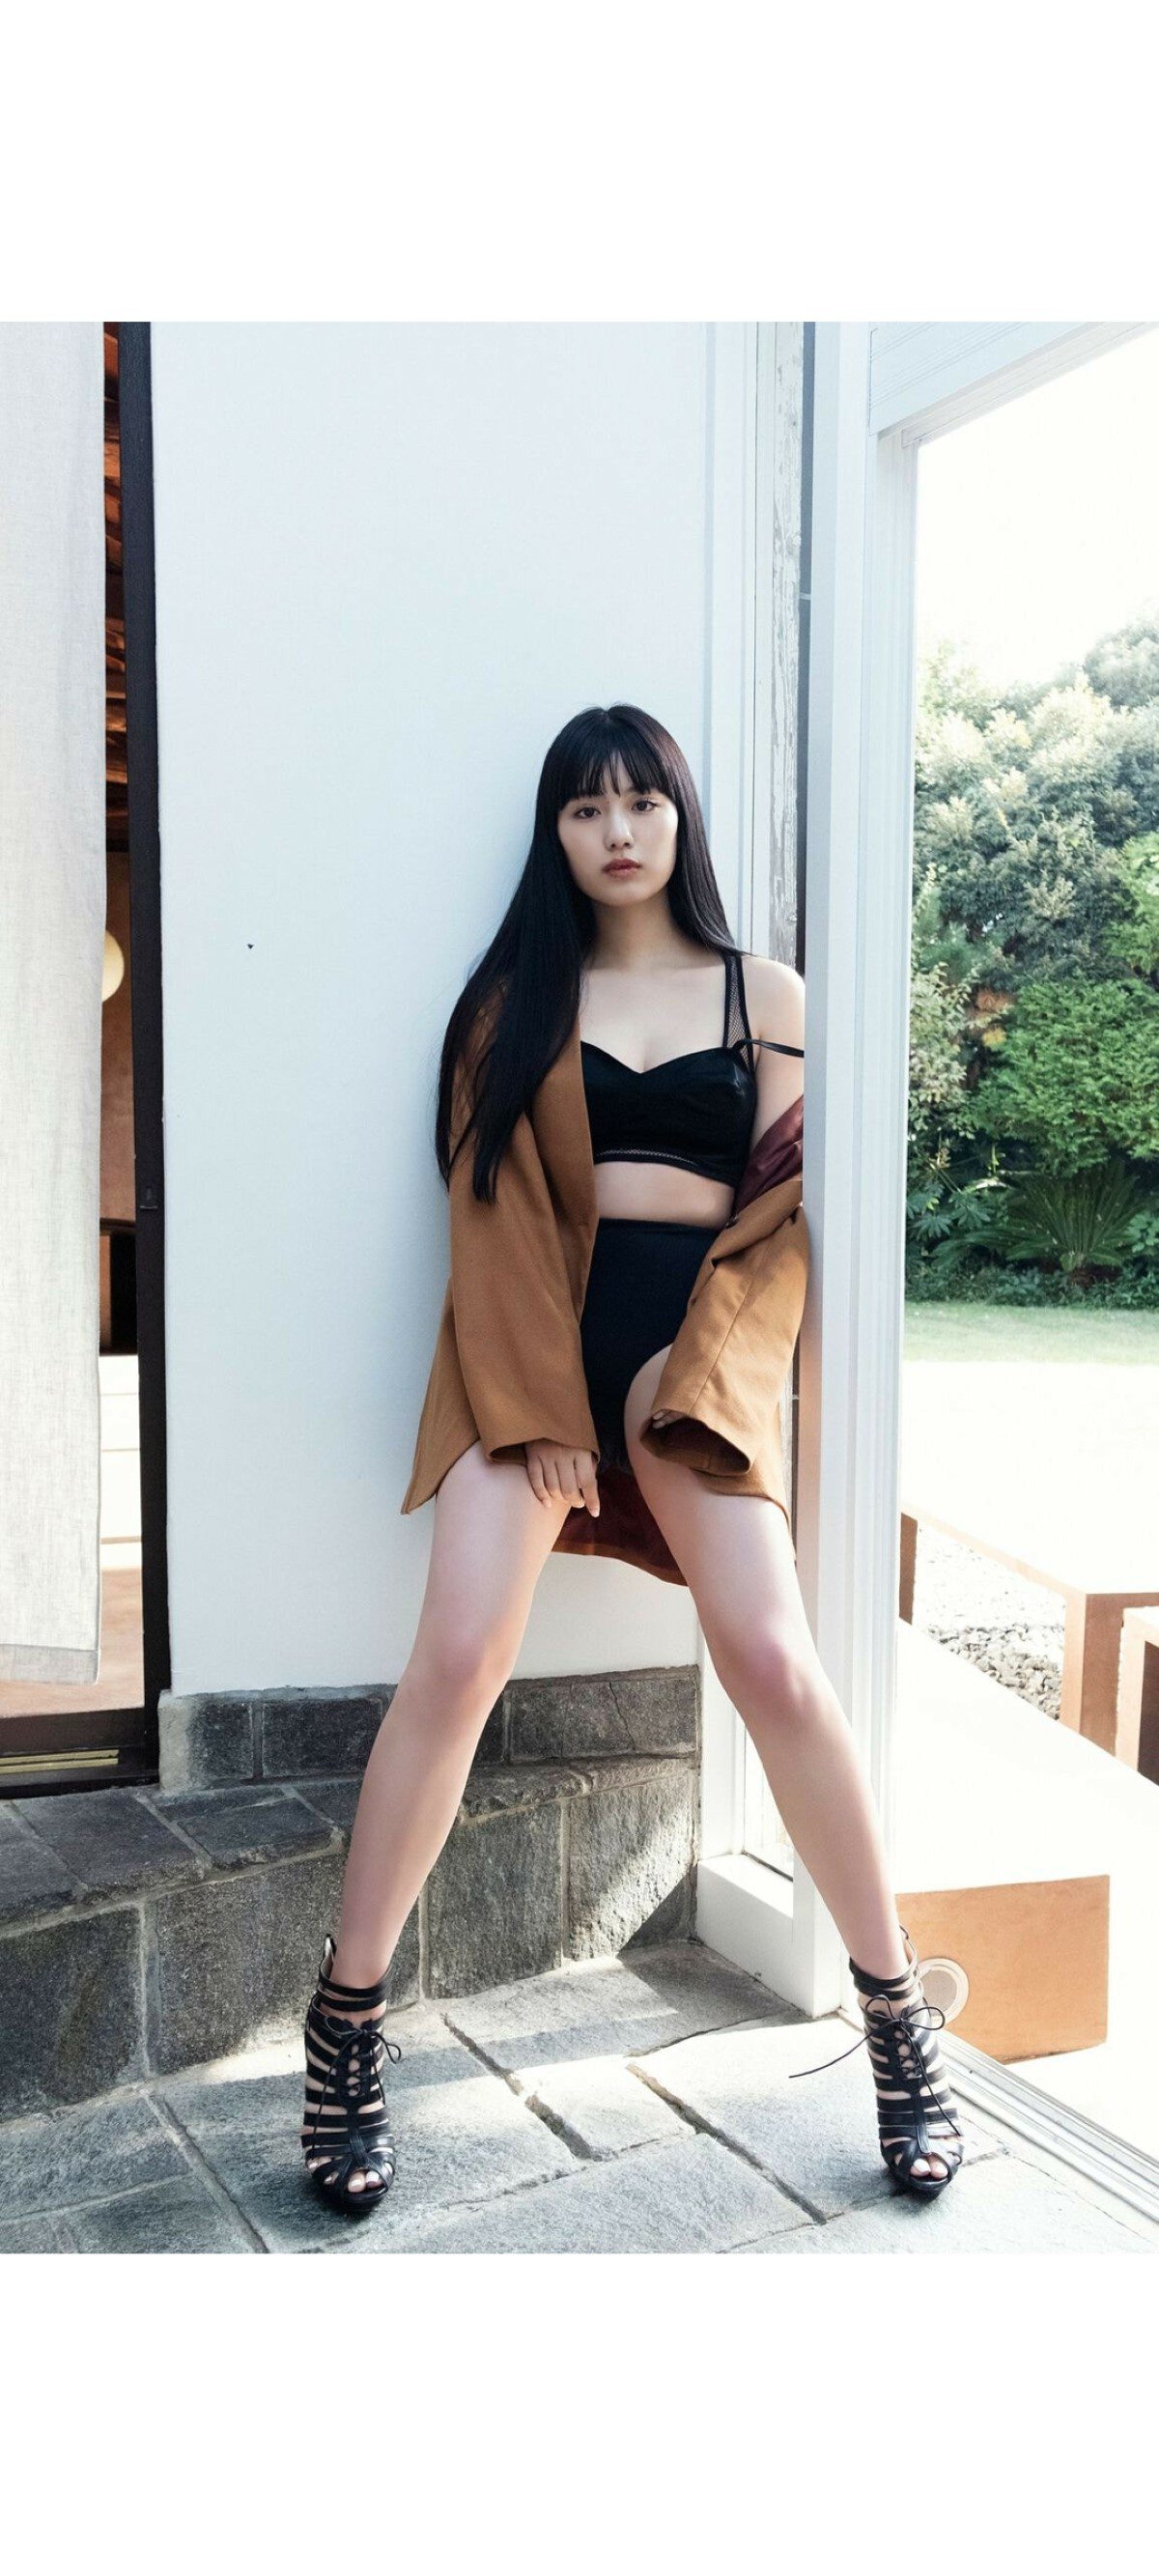 Weekly Photobook 2020 12 07 Noa Tsurushima 鶴嶋乃愛 A natural actress 生まれながらにして女優 002 6256500634.jpg